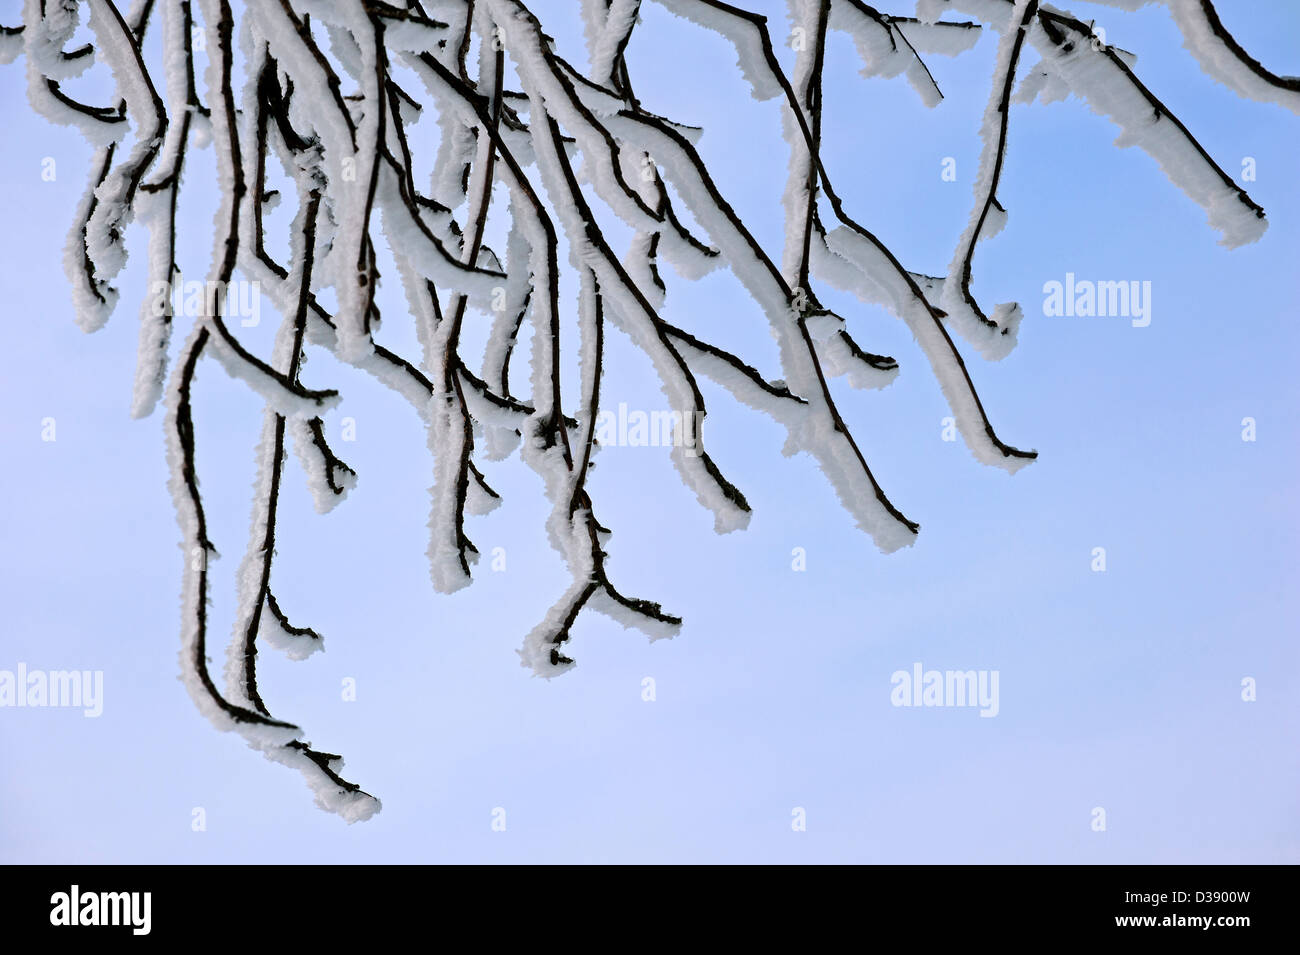 Zweige des bewaldeten in weißen Hoar frost und Schnee im Winter mit Eis Kristallbildung durch Wind in gleiche Richtung zeigen Stockfoto